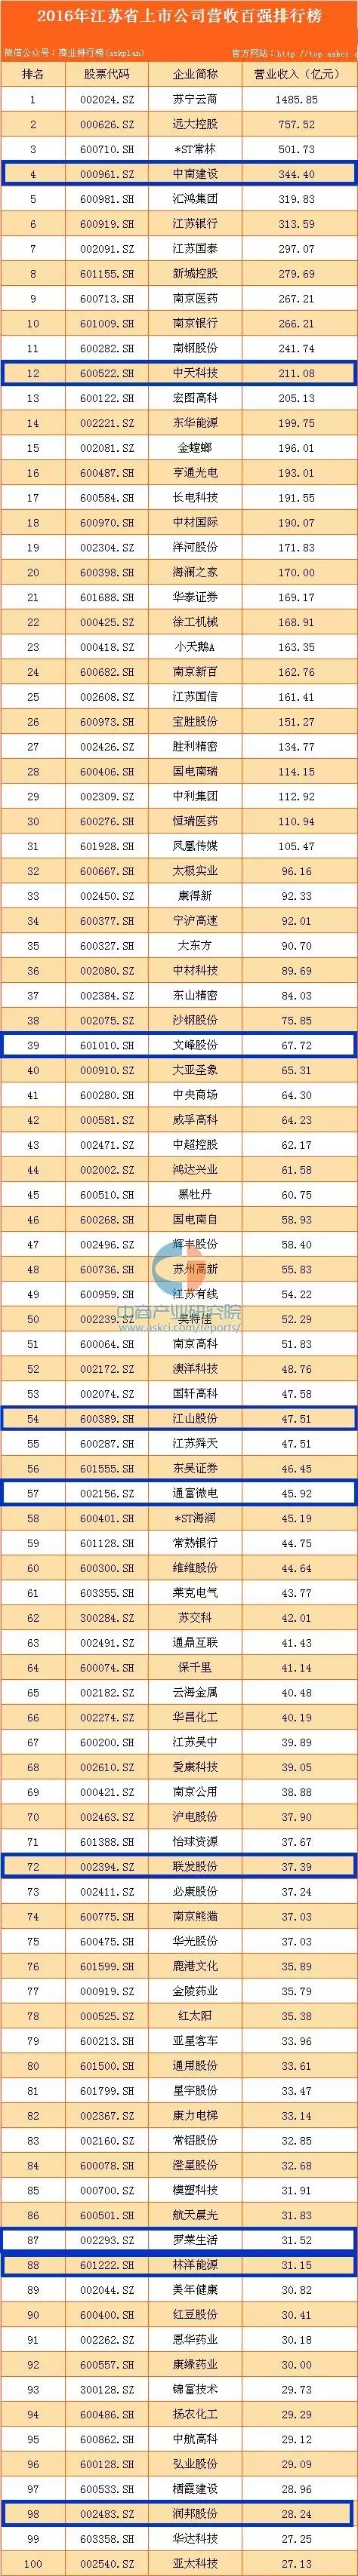 2017中国上市企业500强发布 南通两家企业再次上榜